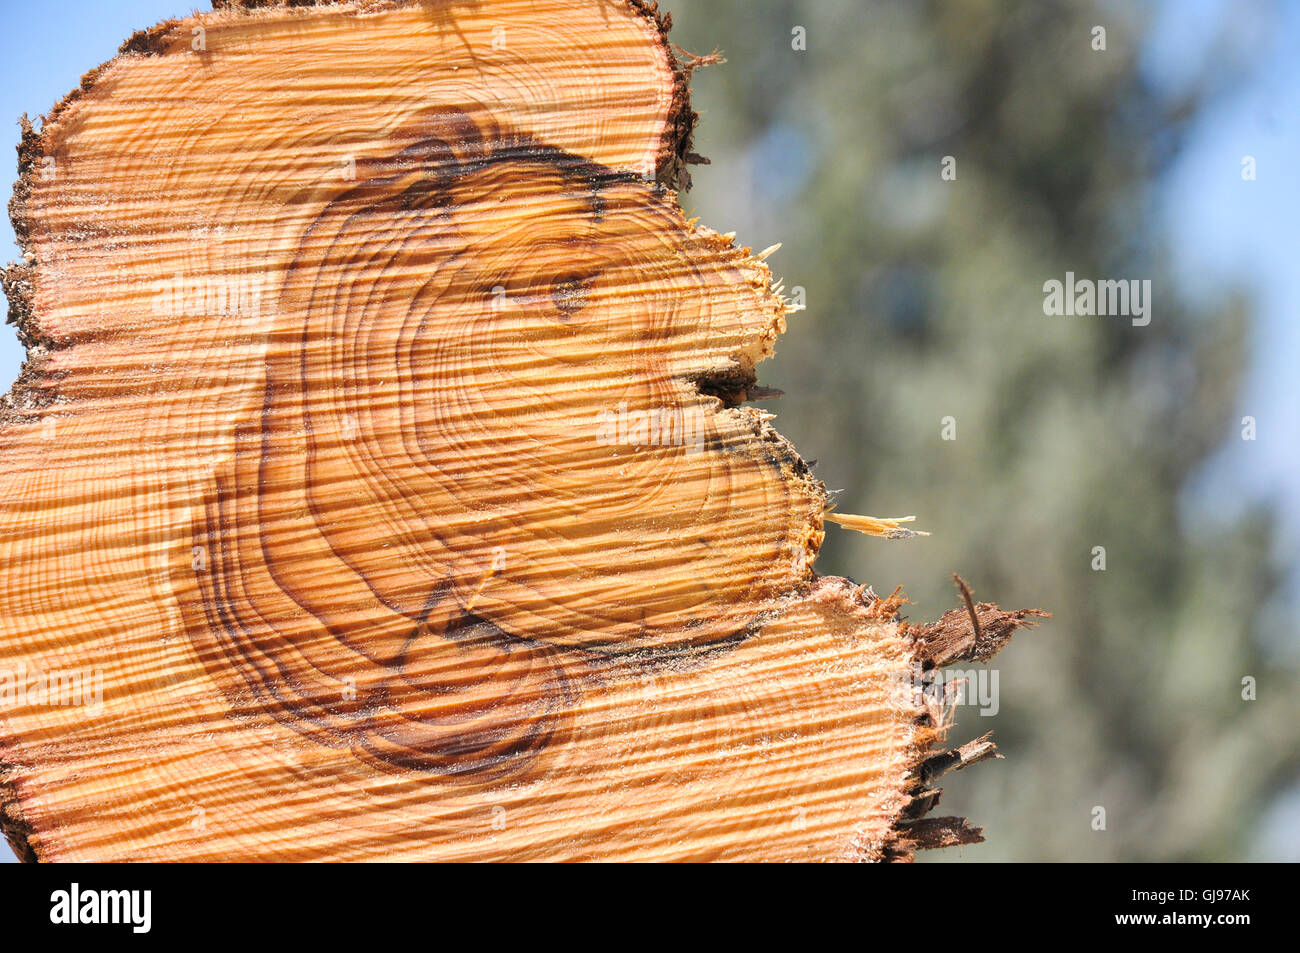 Près d'une section à travers un tronc d'arbre de pin Cette montre a marqué les anneaux de croissance. Anneaux visibles apparaissent à la suite de l'évolution de la gr Banque D'Images